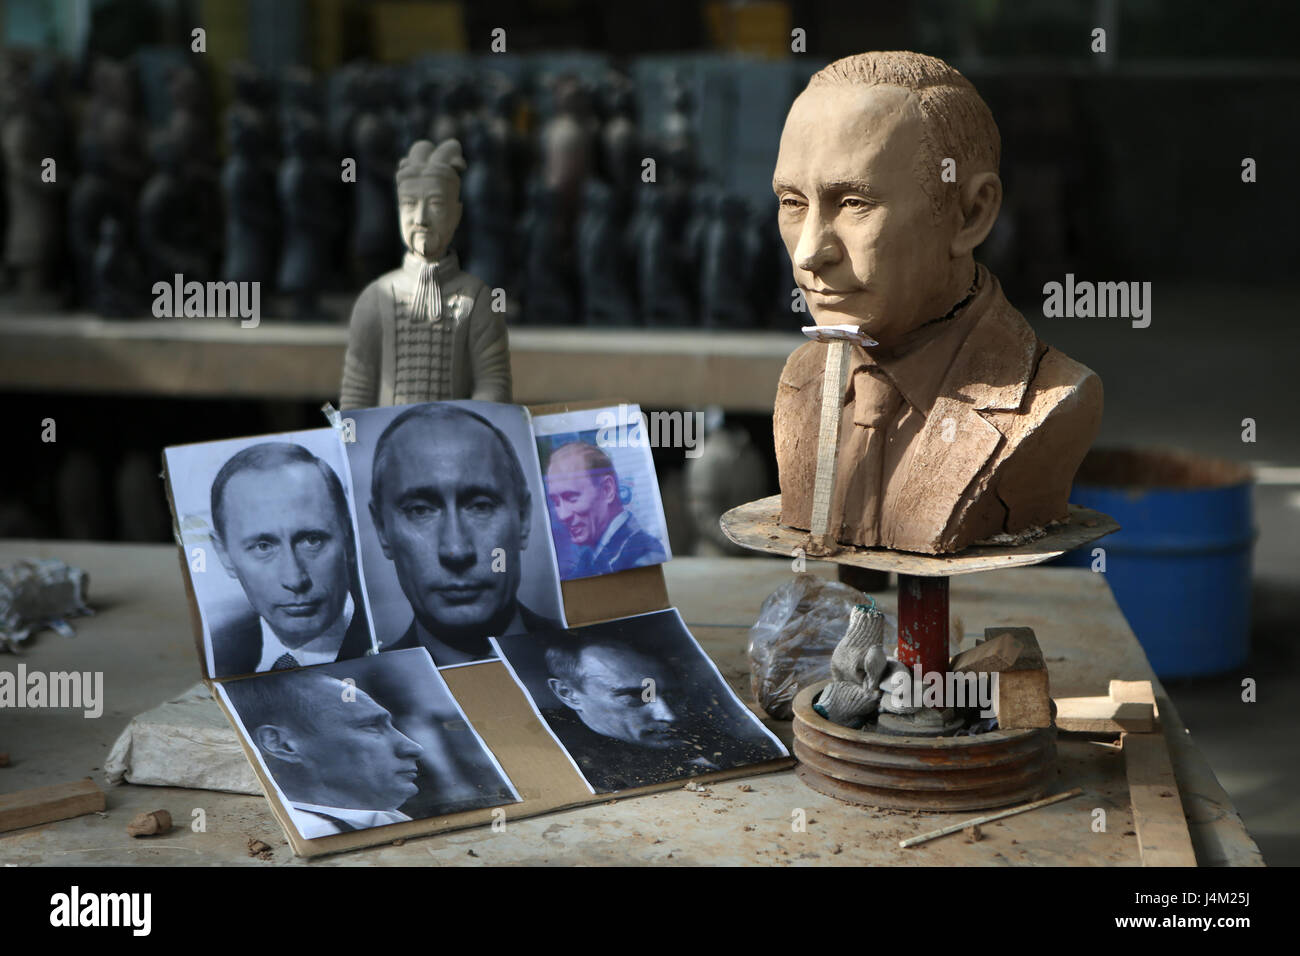 Modern sculpture and photos of Vladimir Putin, near Xian, China Stock Photo